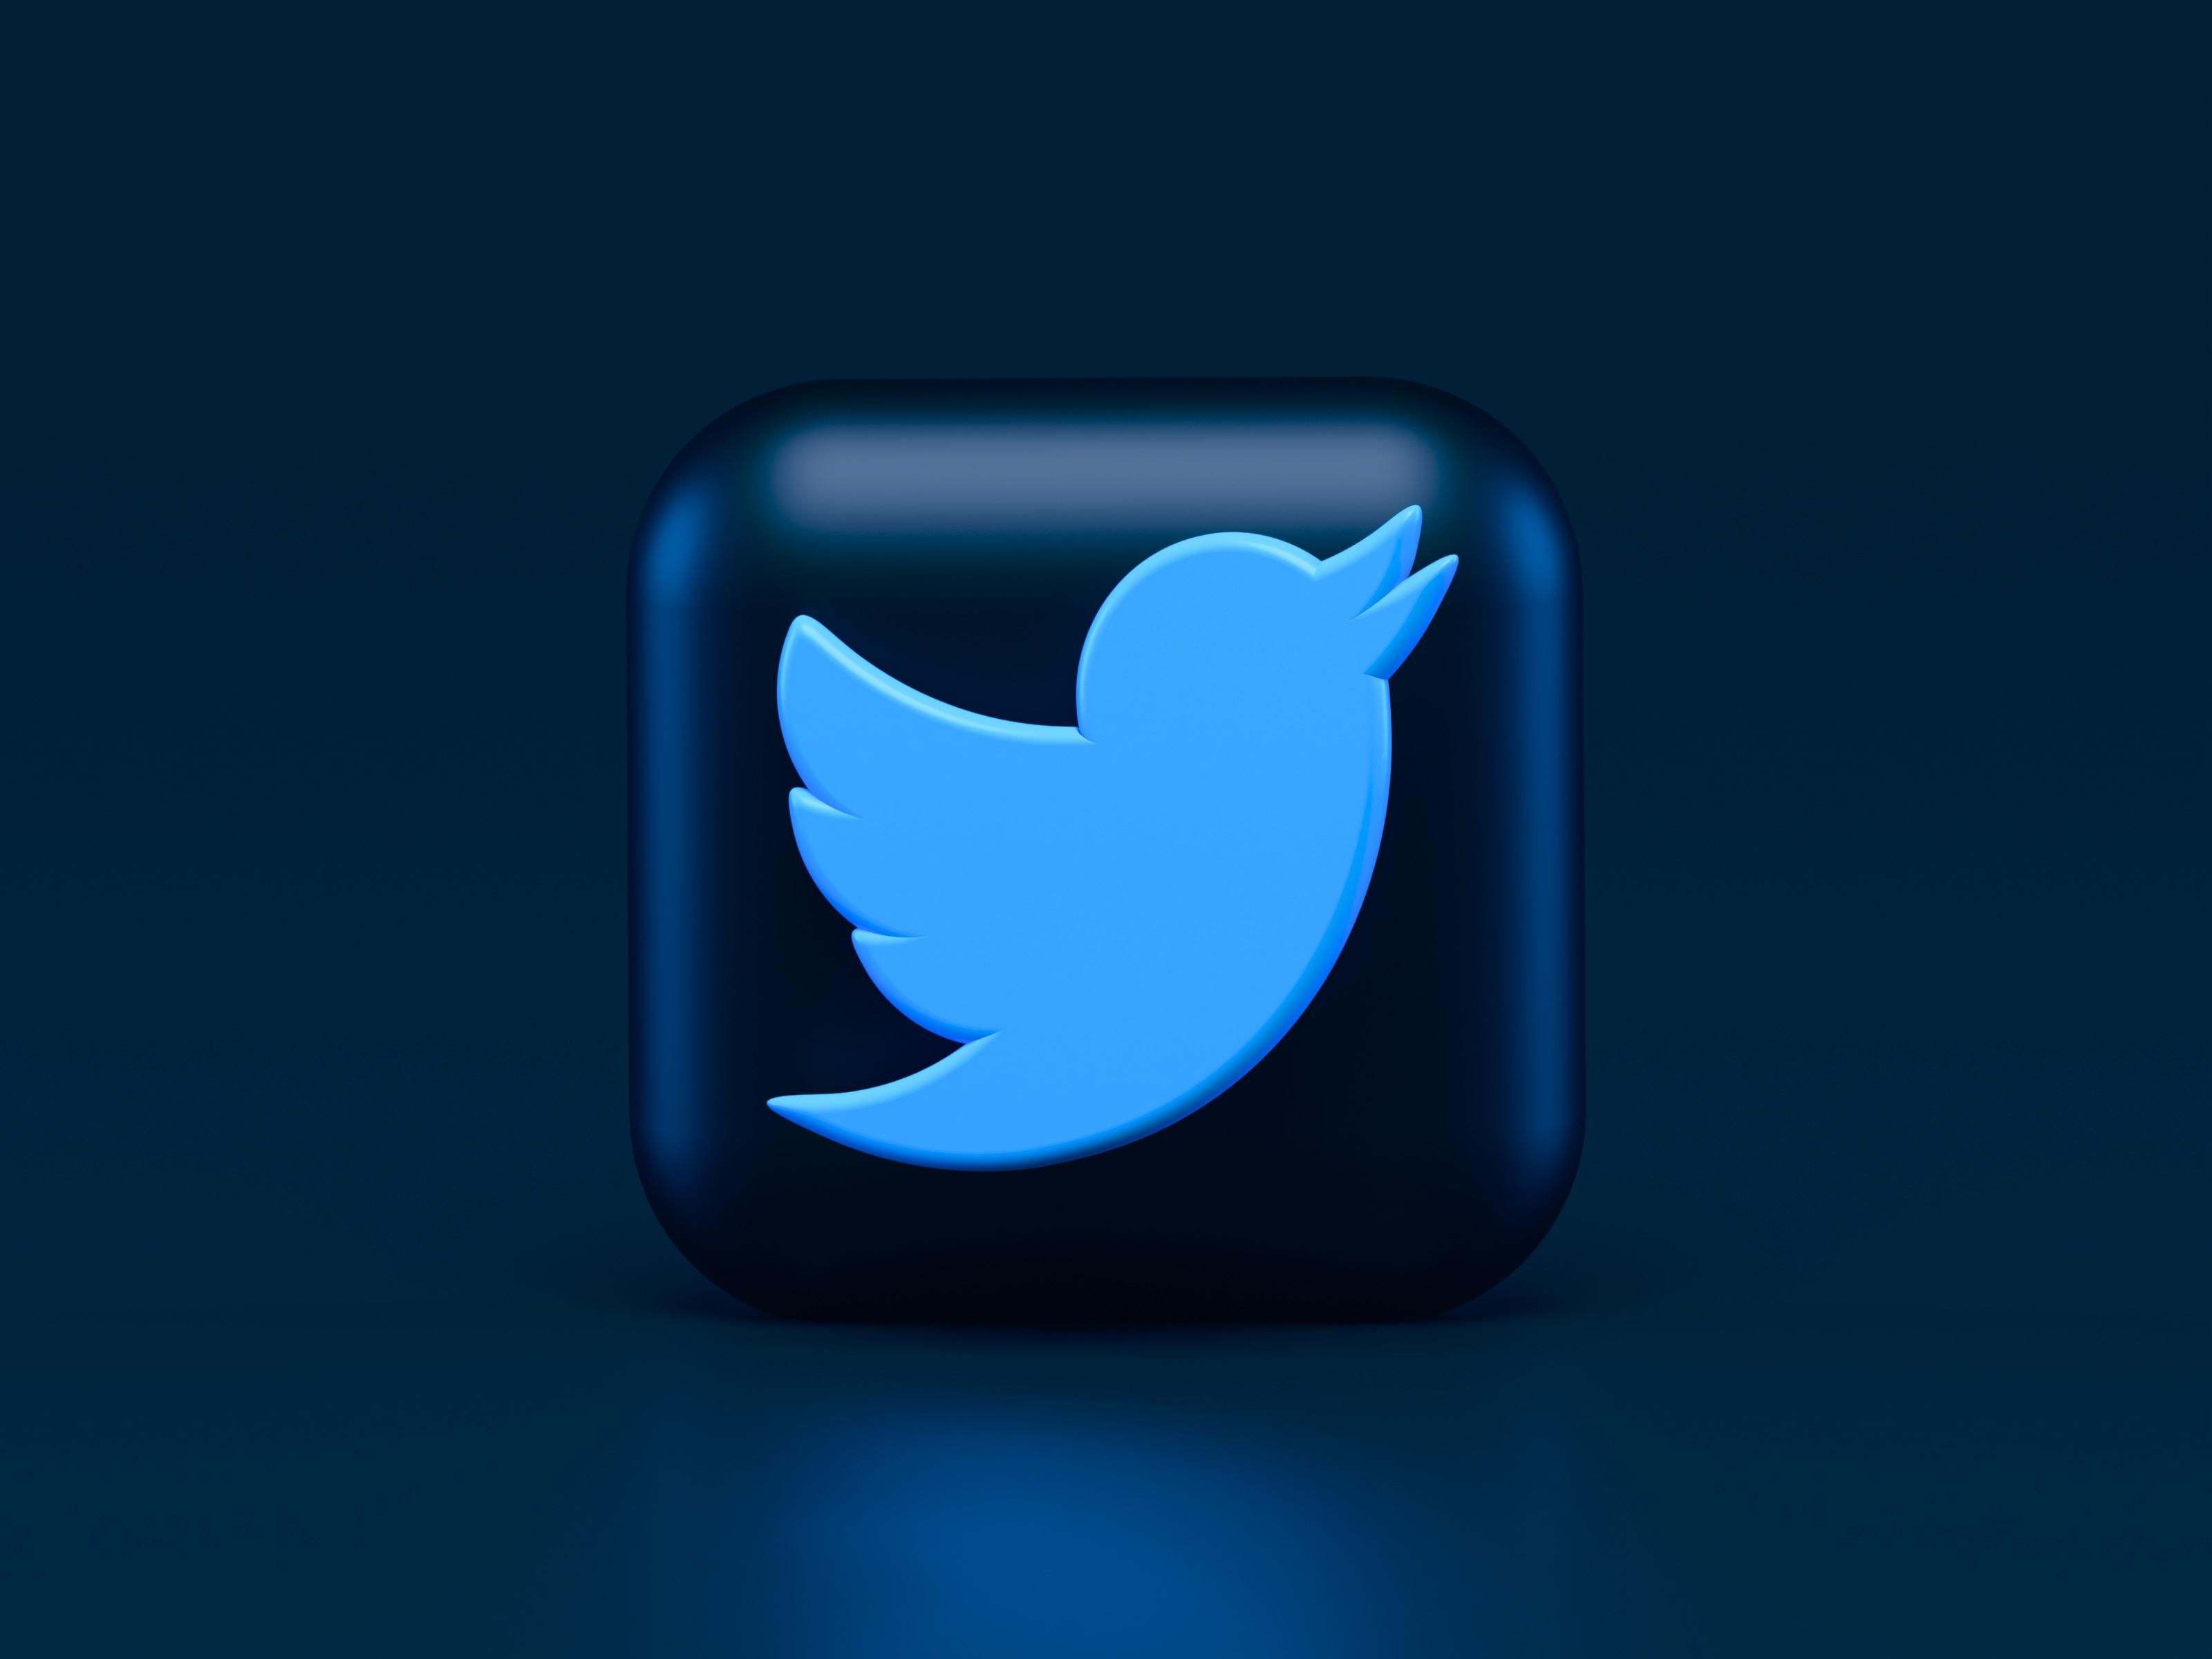 A Twitter kék madaras logója sötétkék háttérben